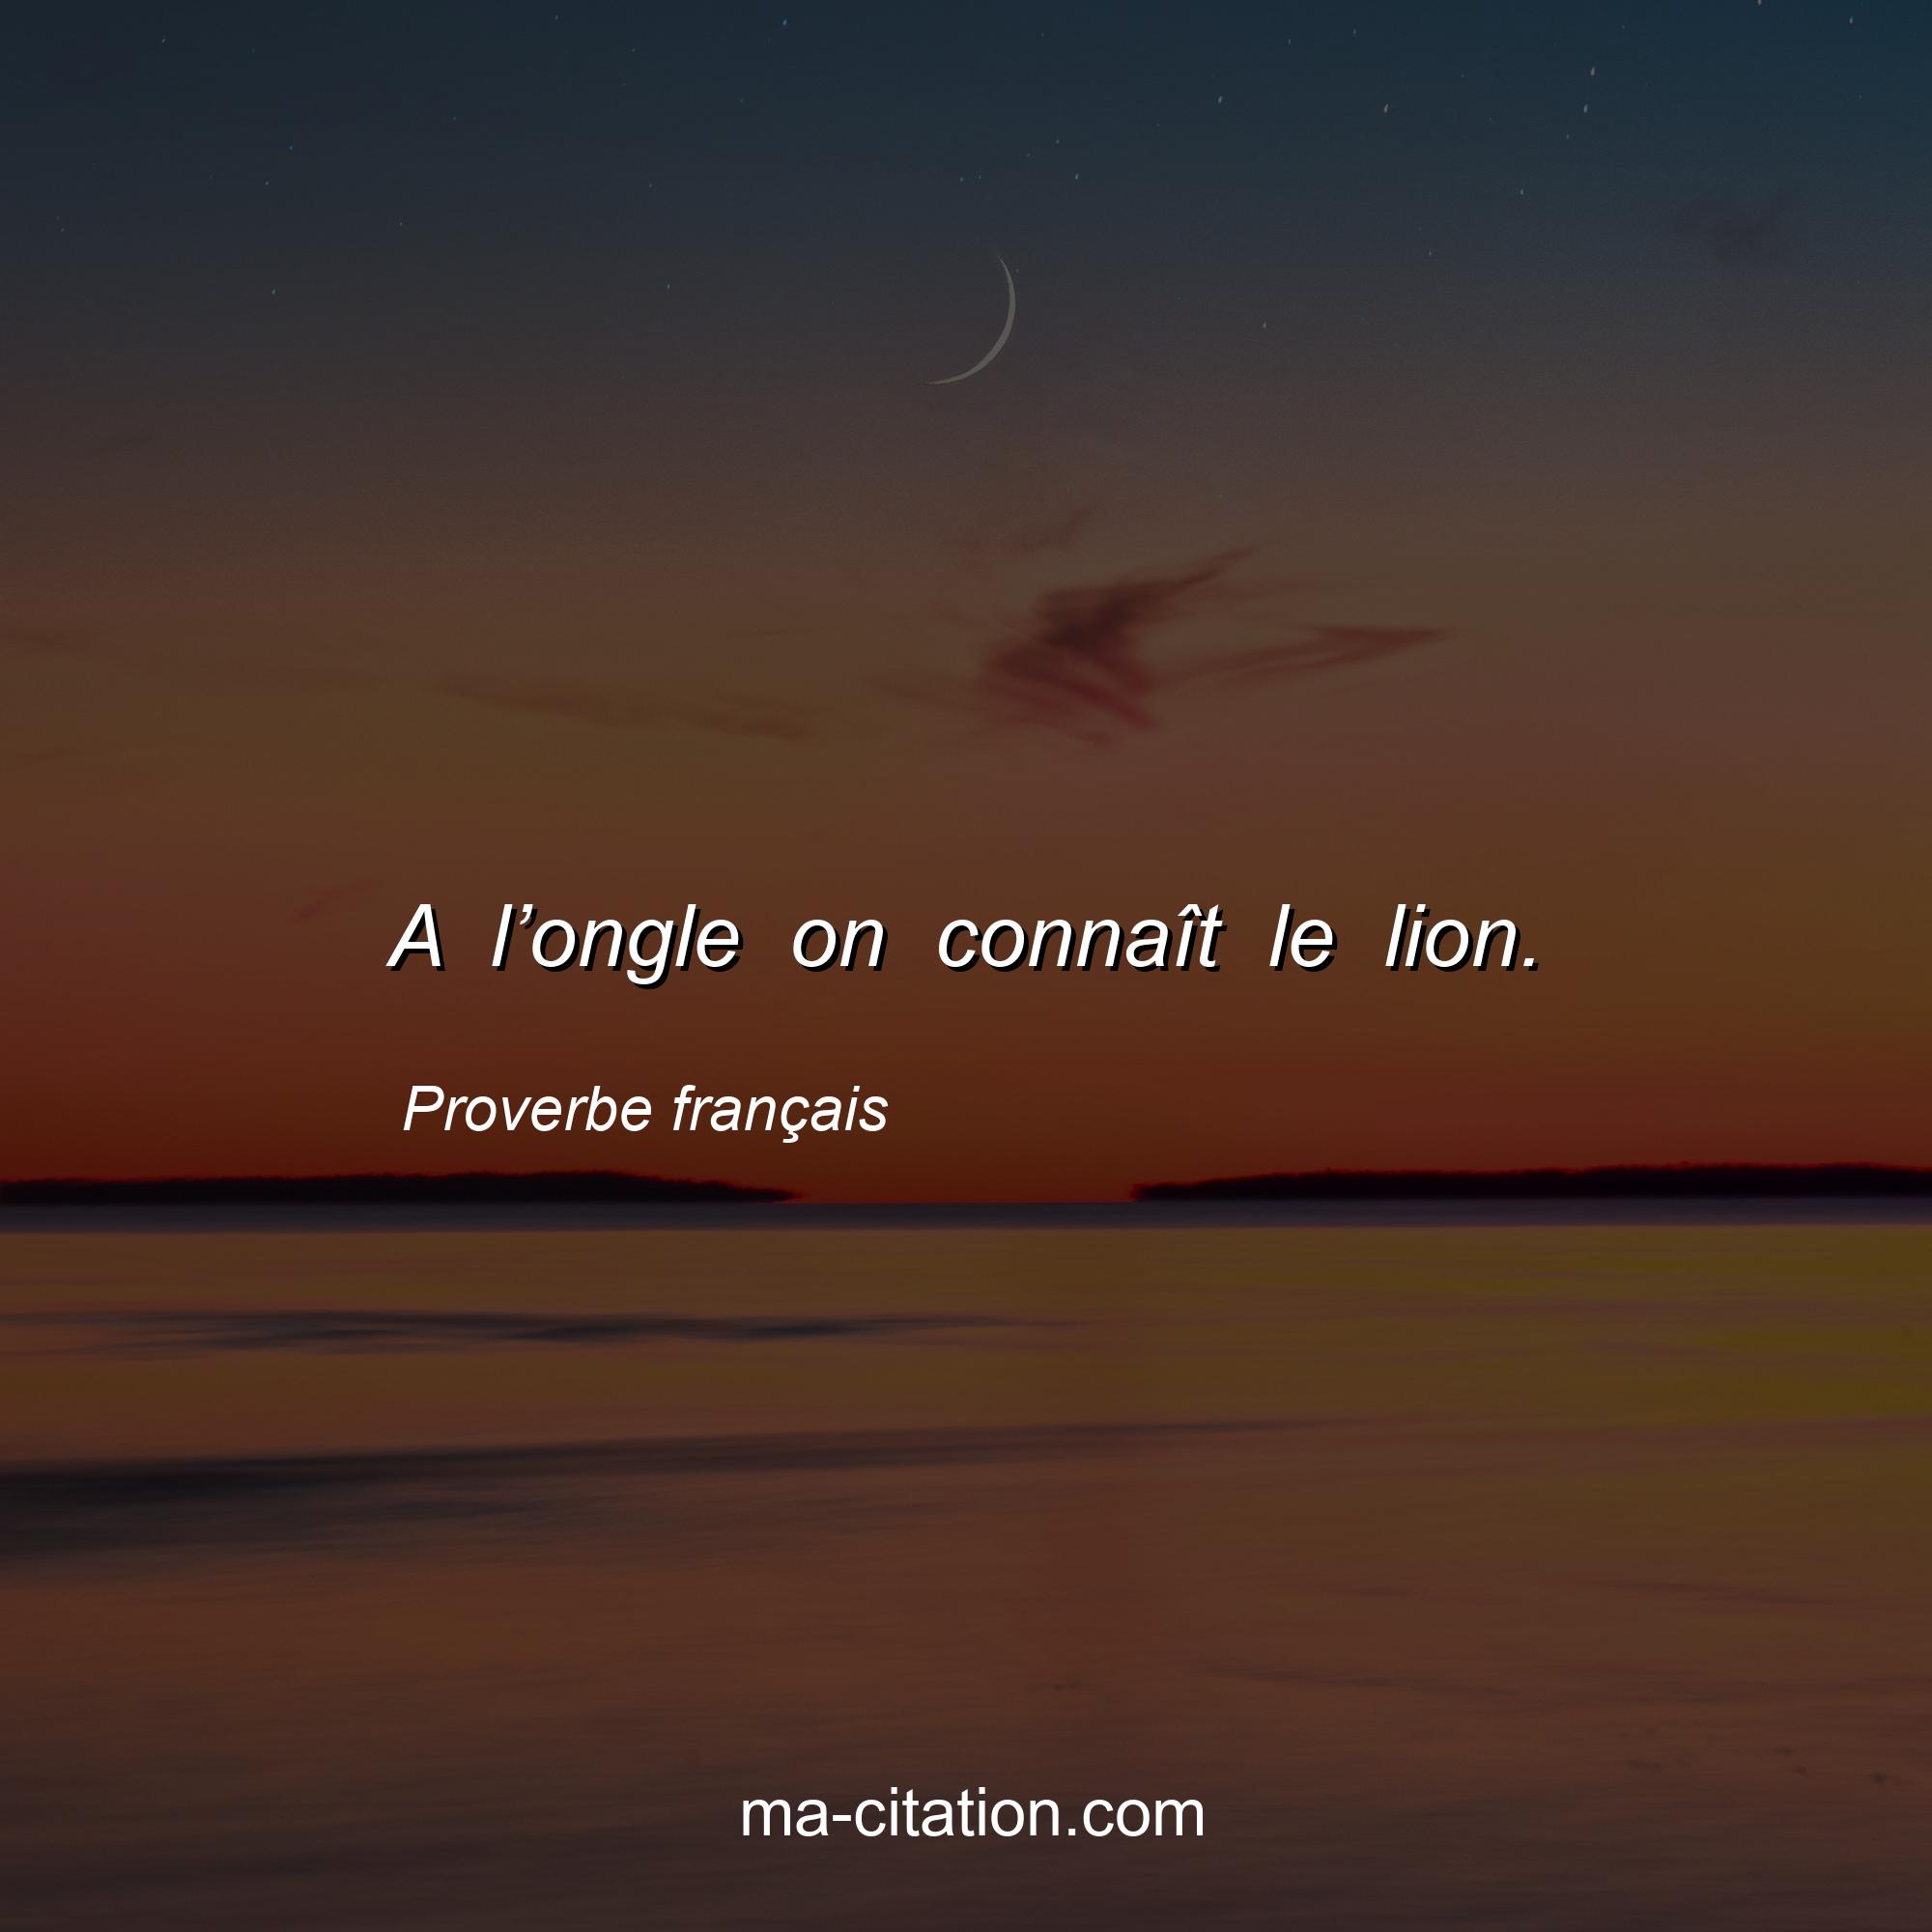 Proverbe français : A l’ongle on connaît le lion.